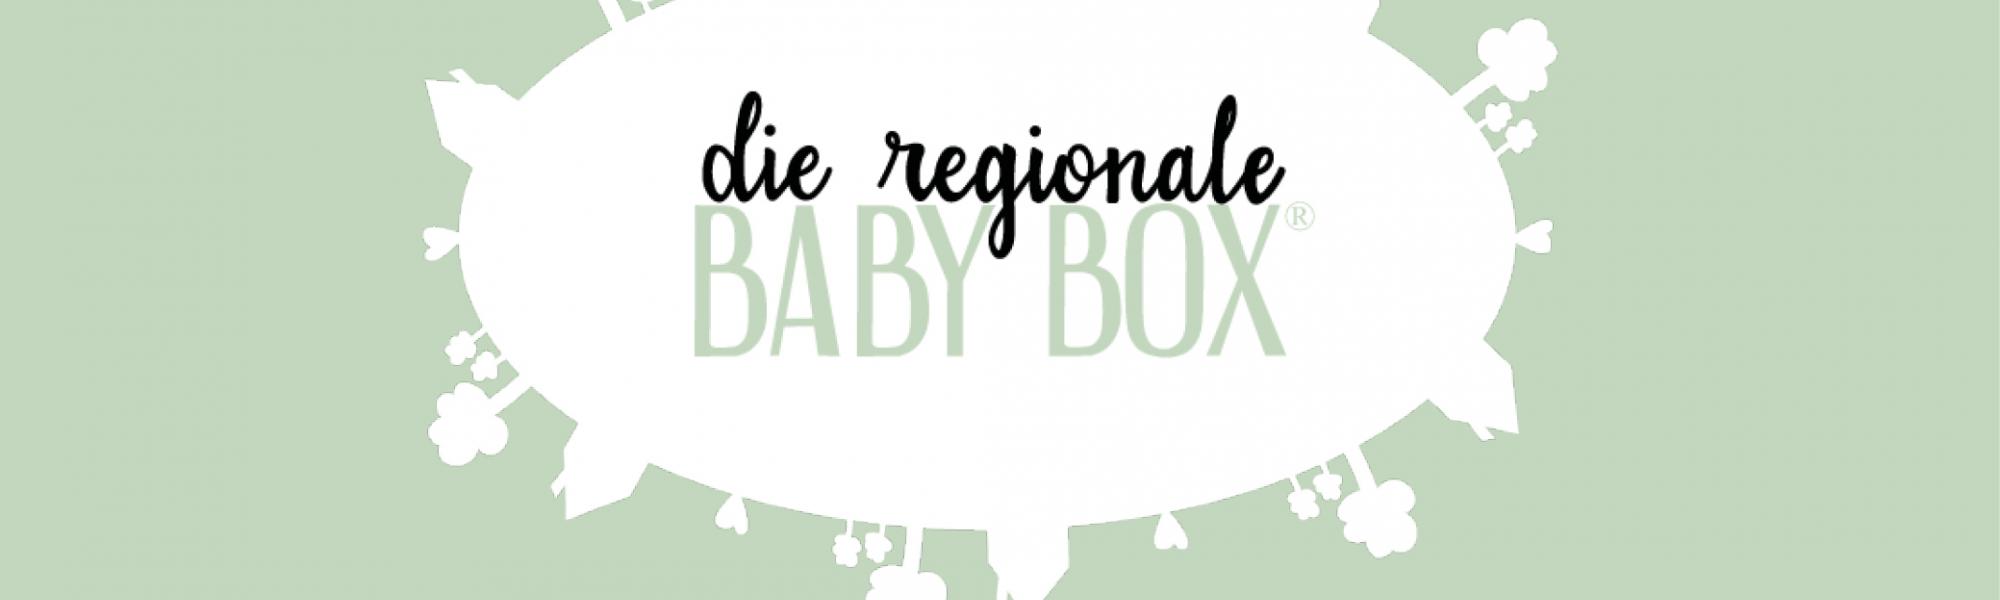 Die Babybox